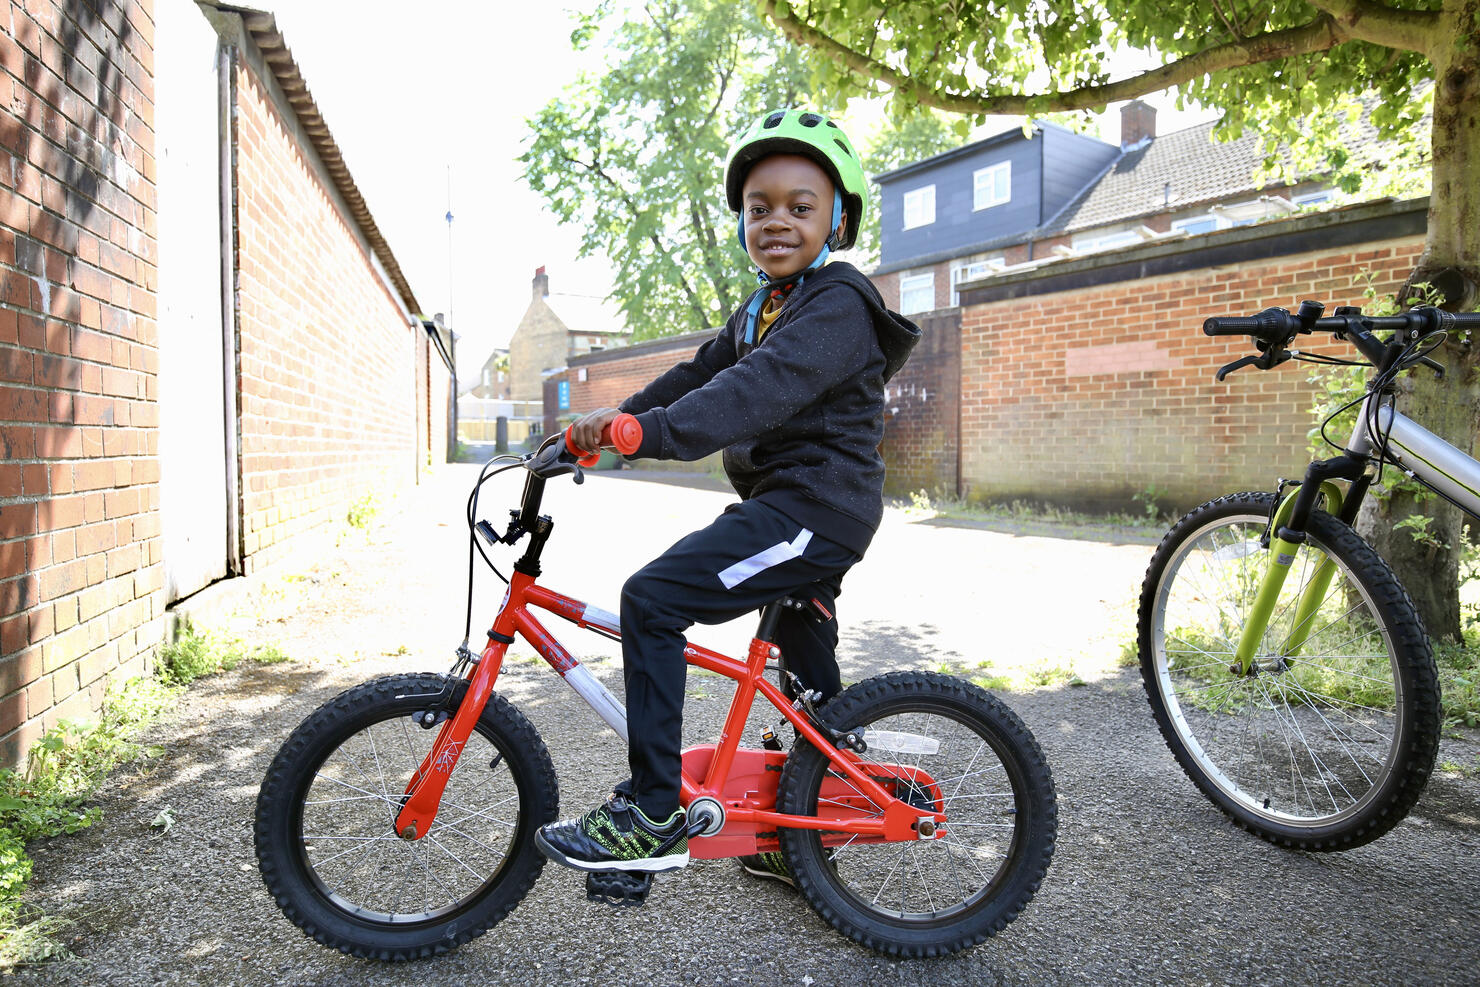 Boy on a red bike wearing a helmet